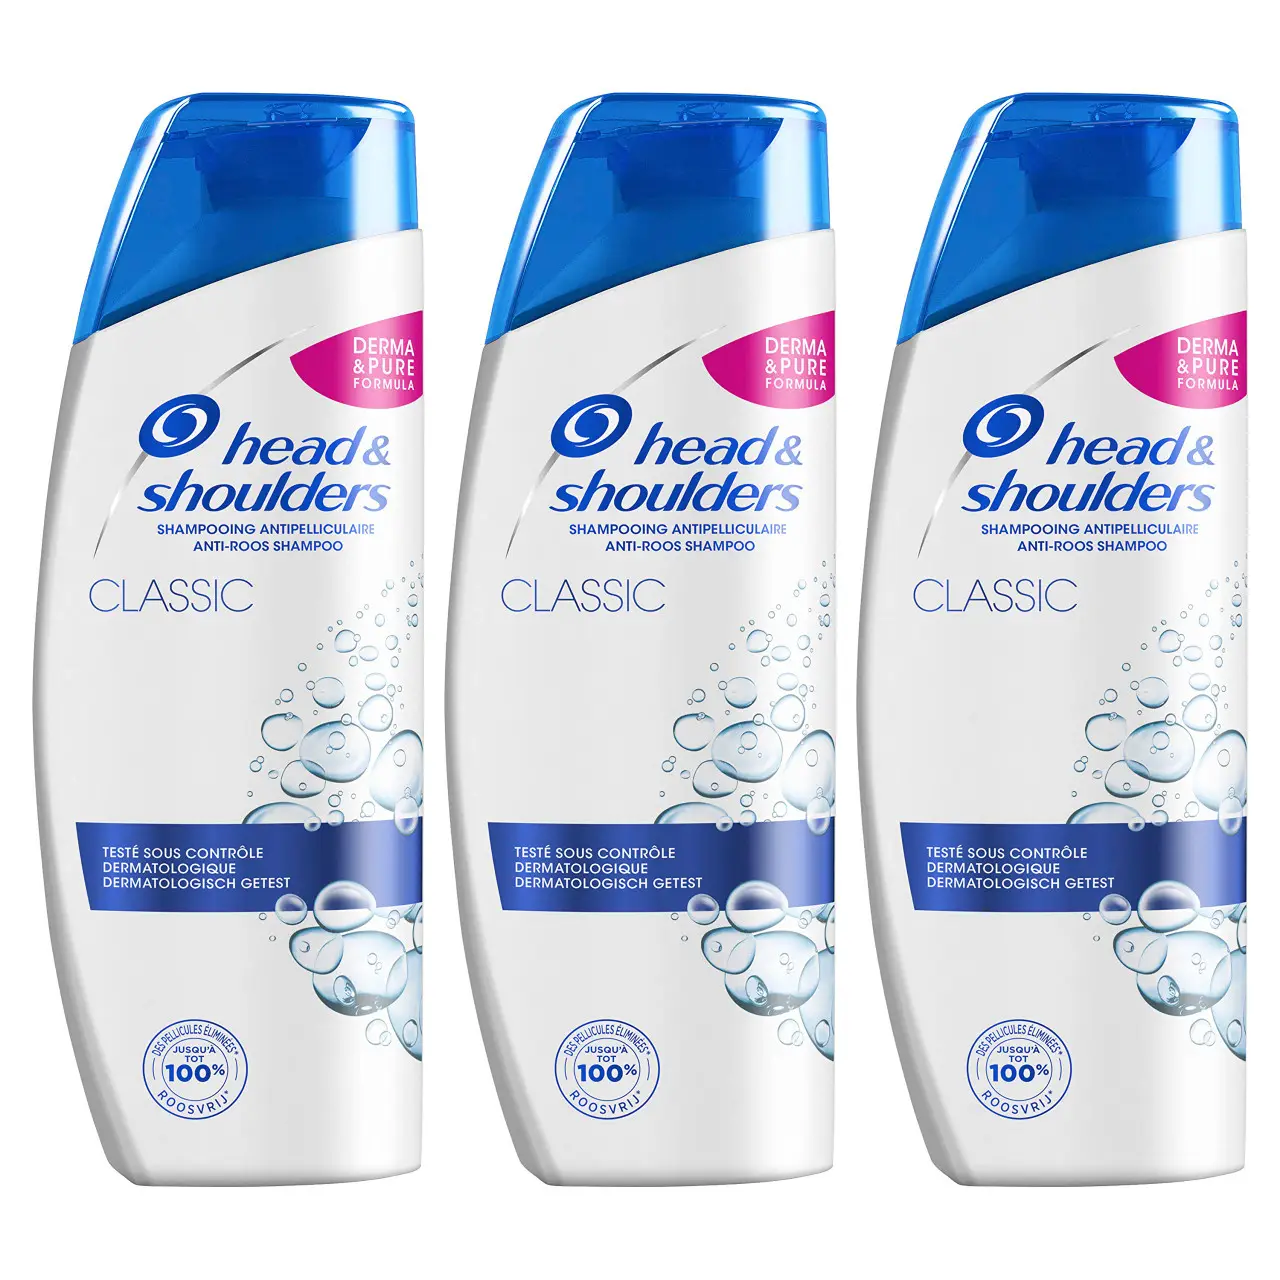 Shampoo anti-caspa de volume extra para cabeça e ombros, mais vendido, 2 em 1 de 1000ml